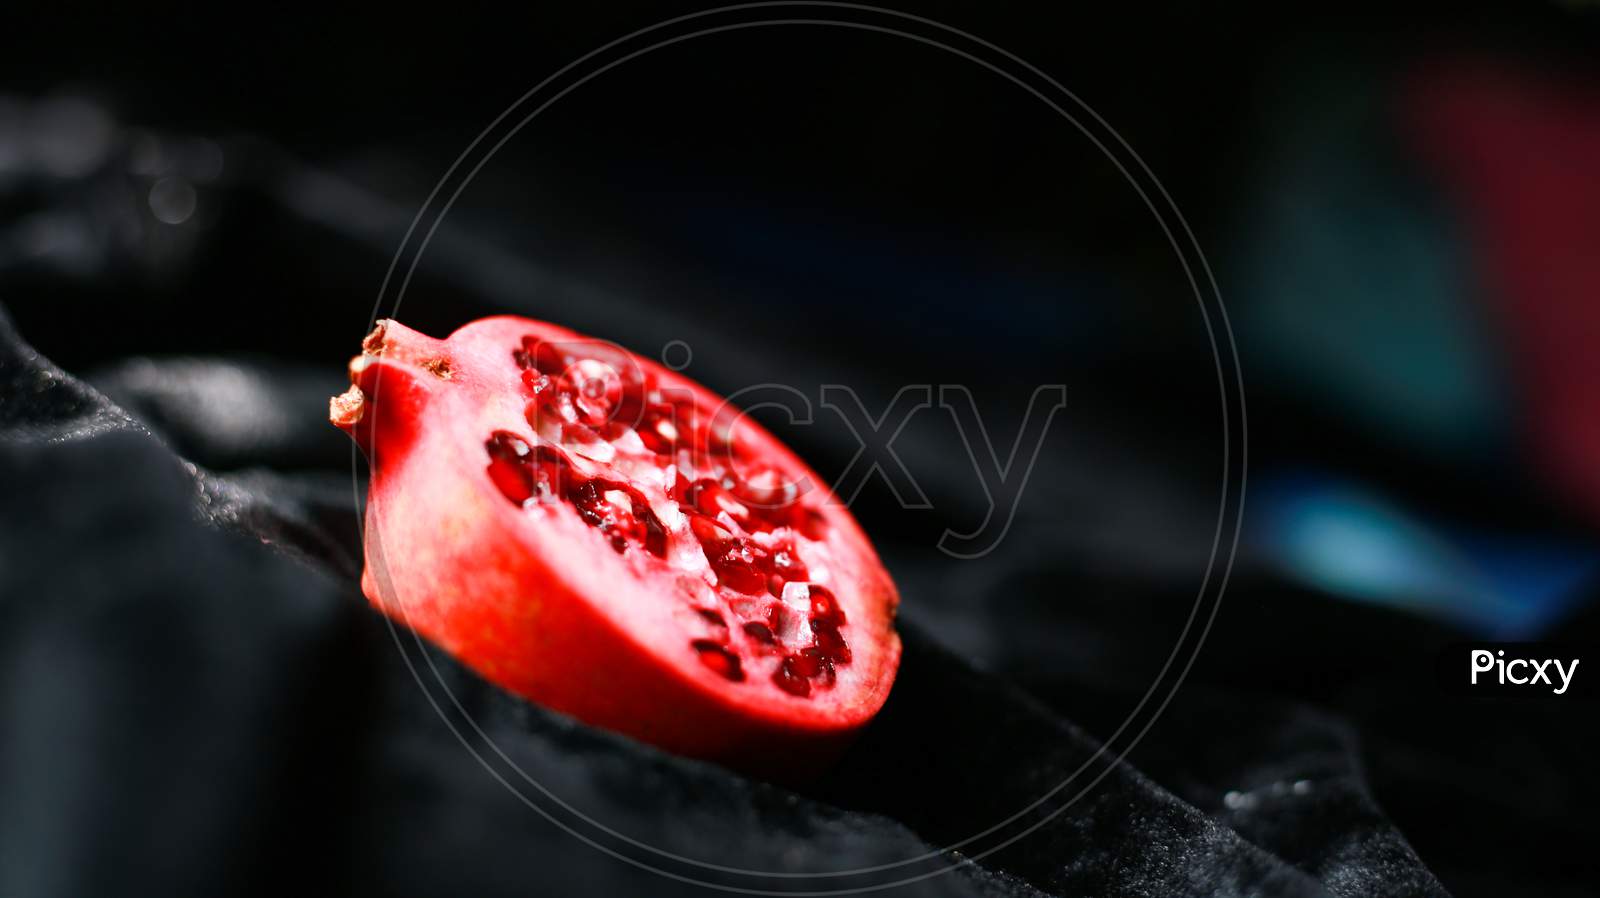 Fresh juicy pomegranate piece on dark background